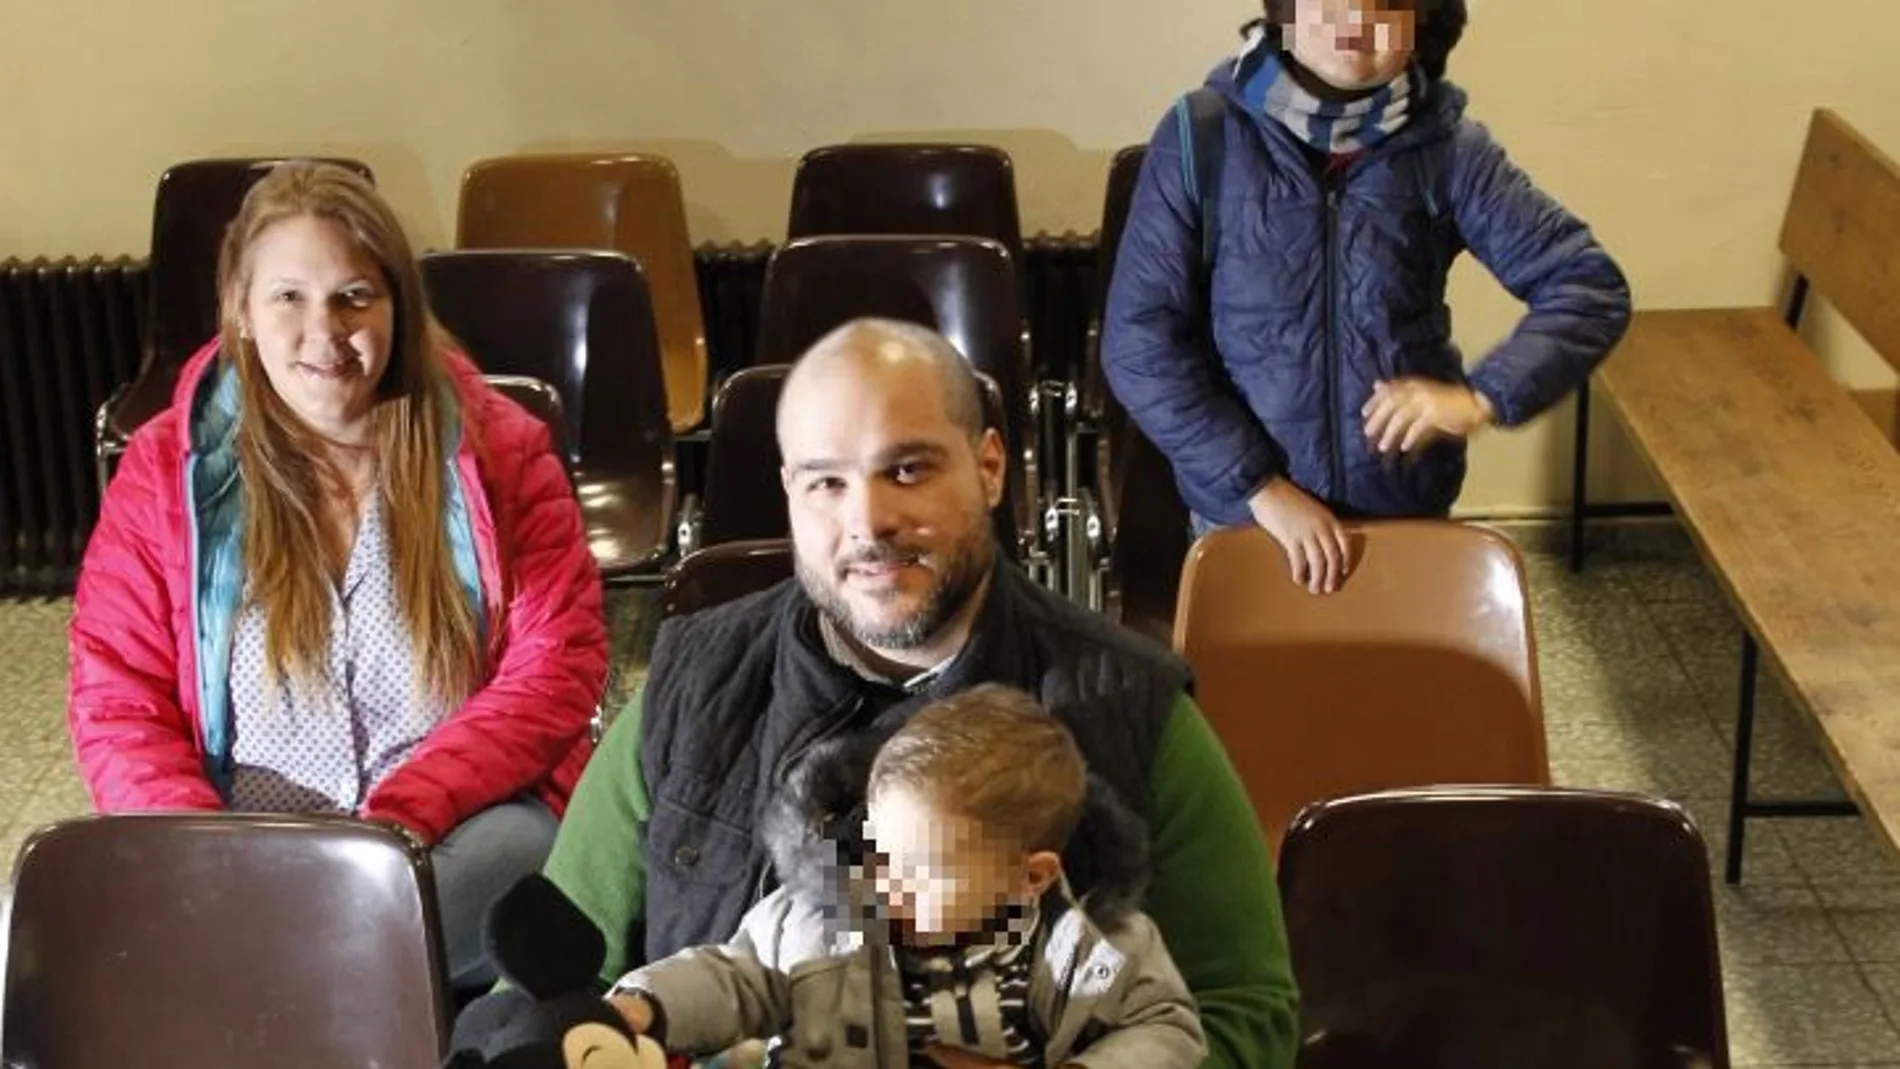 La familia Contreras llegó a España hace un año y siete meses de Venezuela por su oposición a Nicolás Maduro